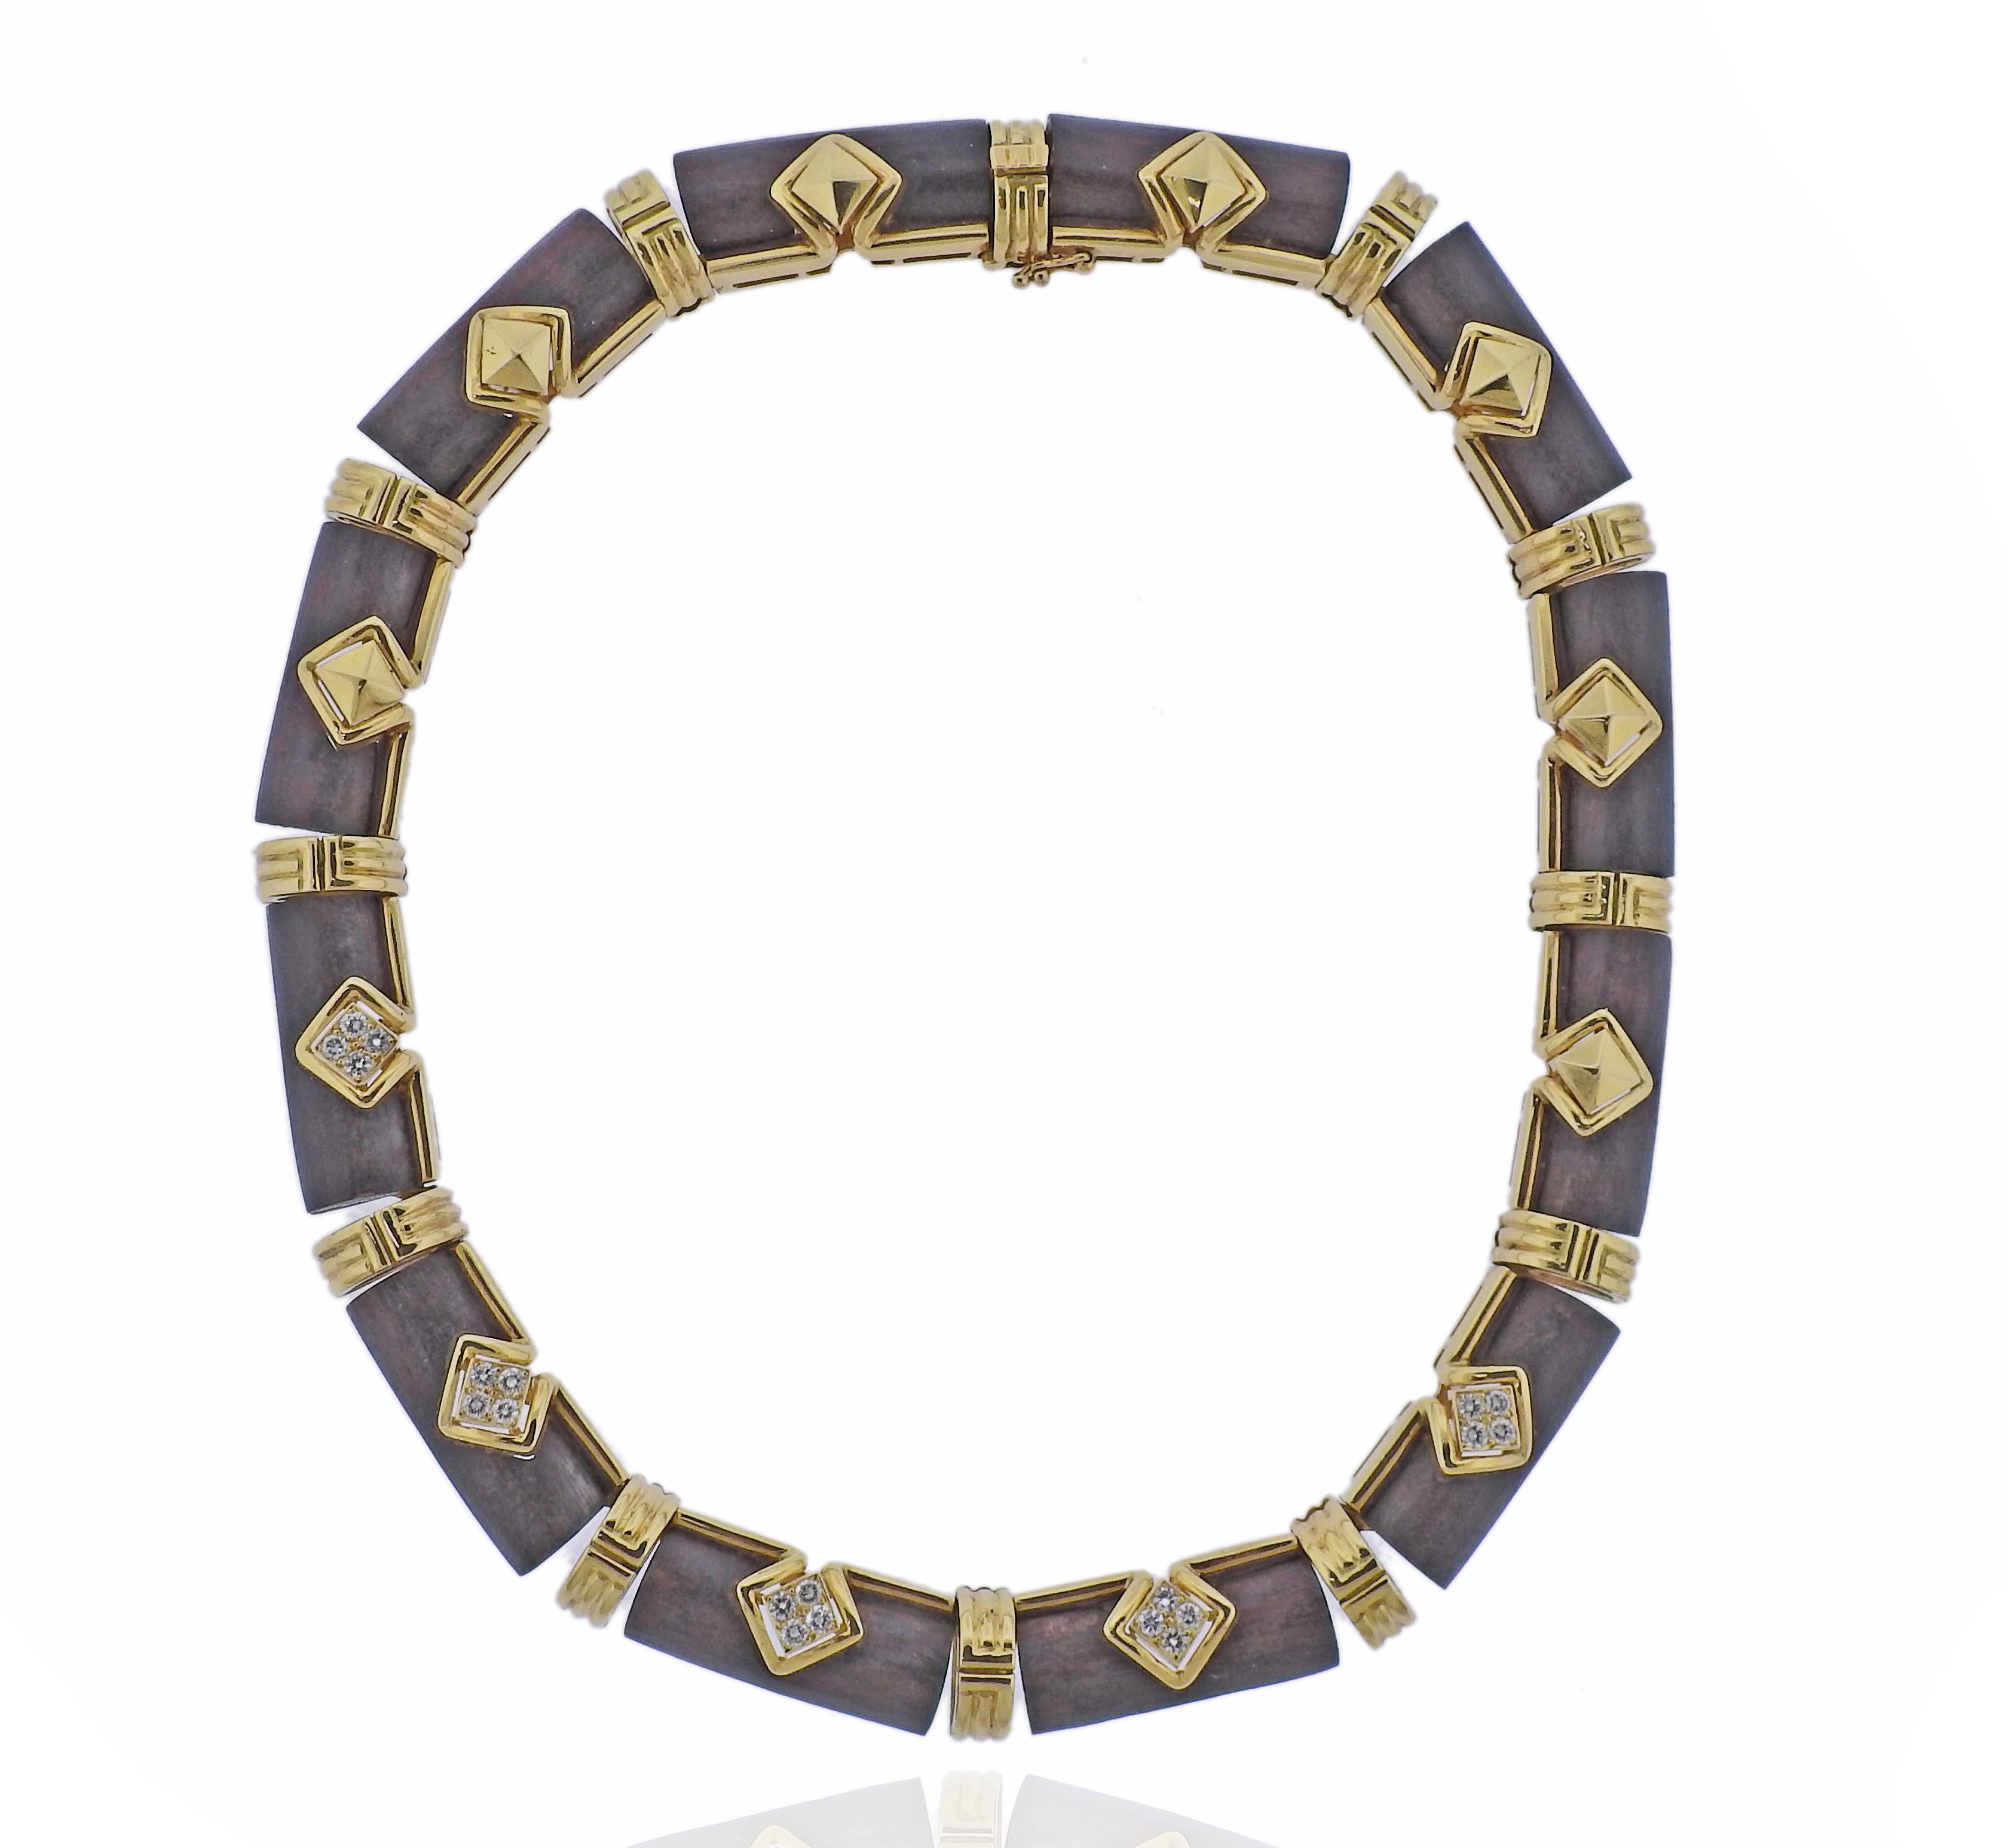 Exquis collier Boucheron en or 18k avec bois et environ 1.00ctw G/VS diamants. Le collier mesure 14,5